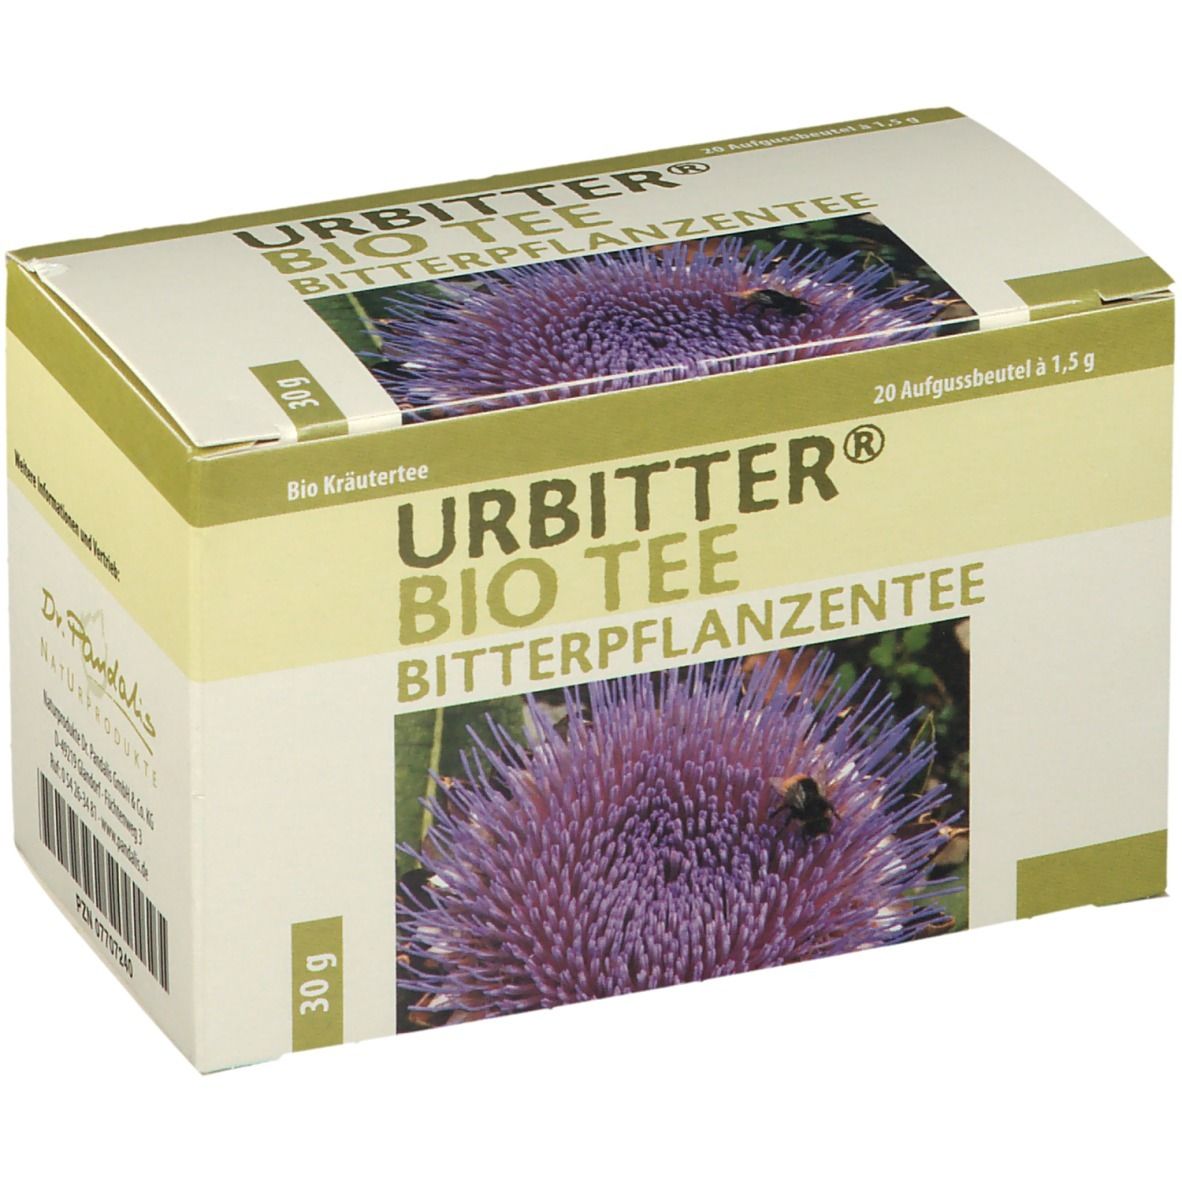 Dr. Pandalis Urbitter® Bio Tee